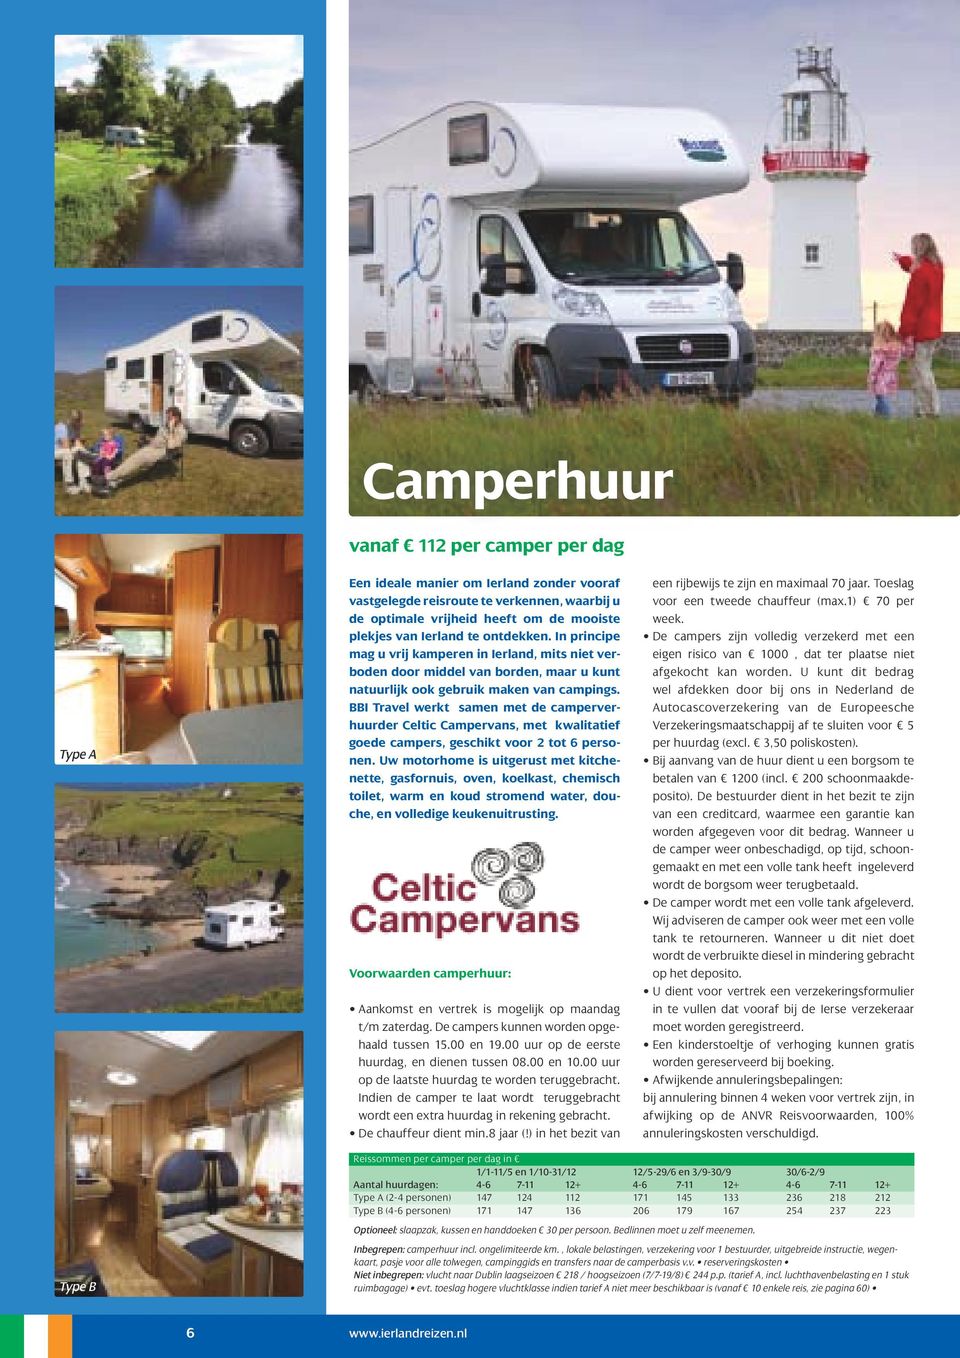 BBI Travel werkt samen met de camperverhuurder Celtic Campervans, met kwalitatief goede campers, geschikt voor 2 tot 6 personen.